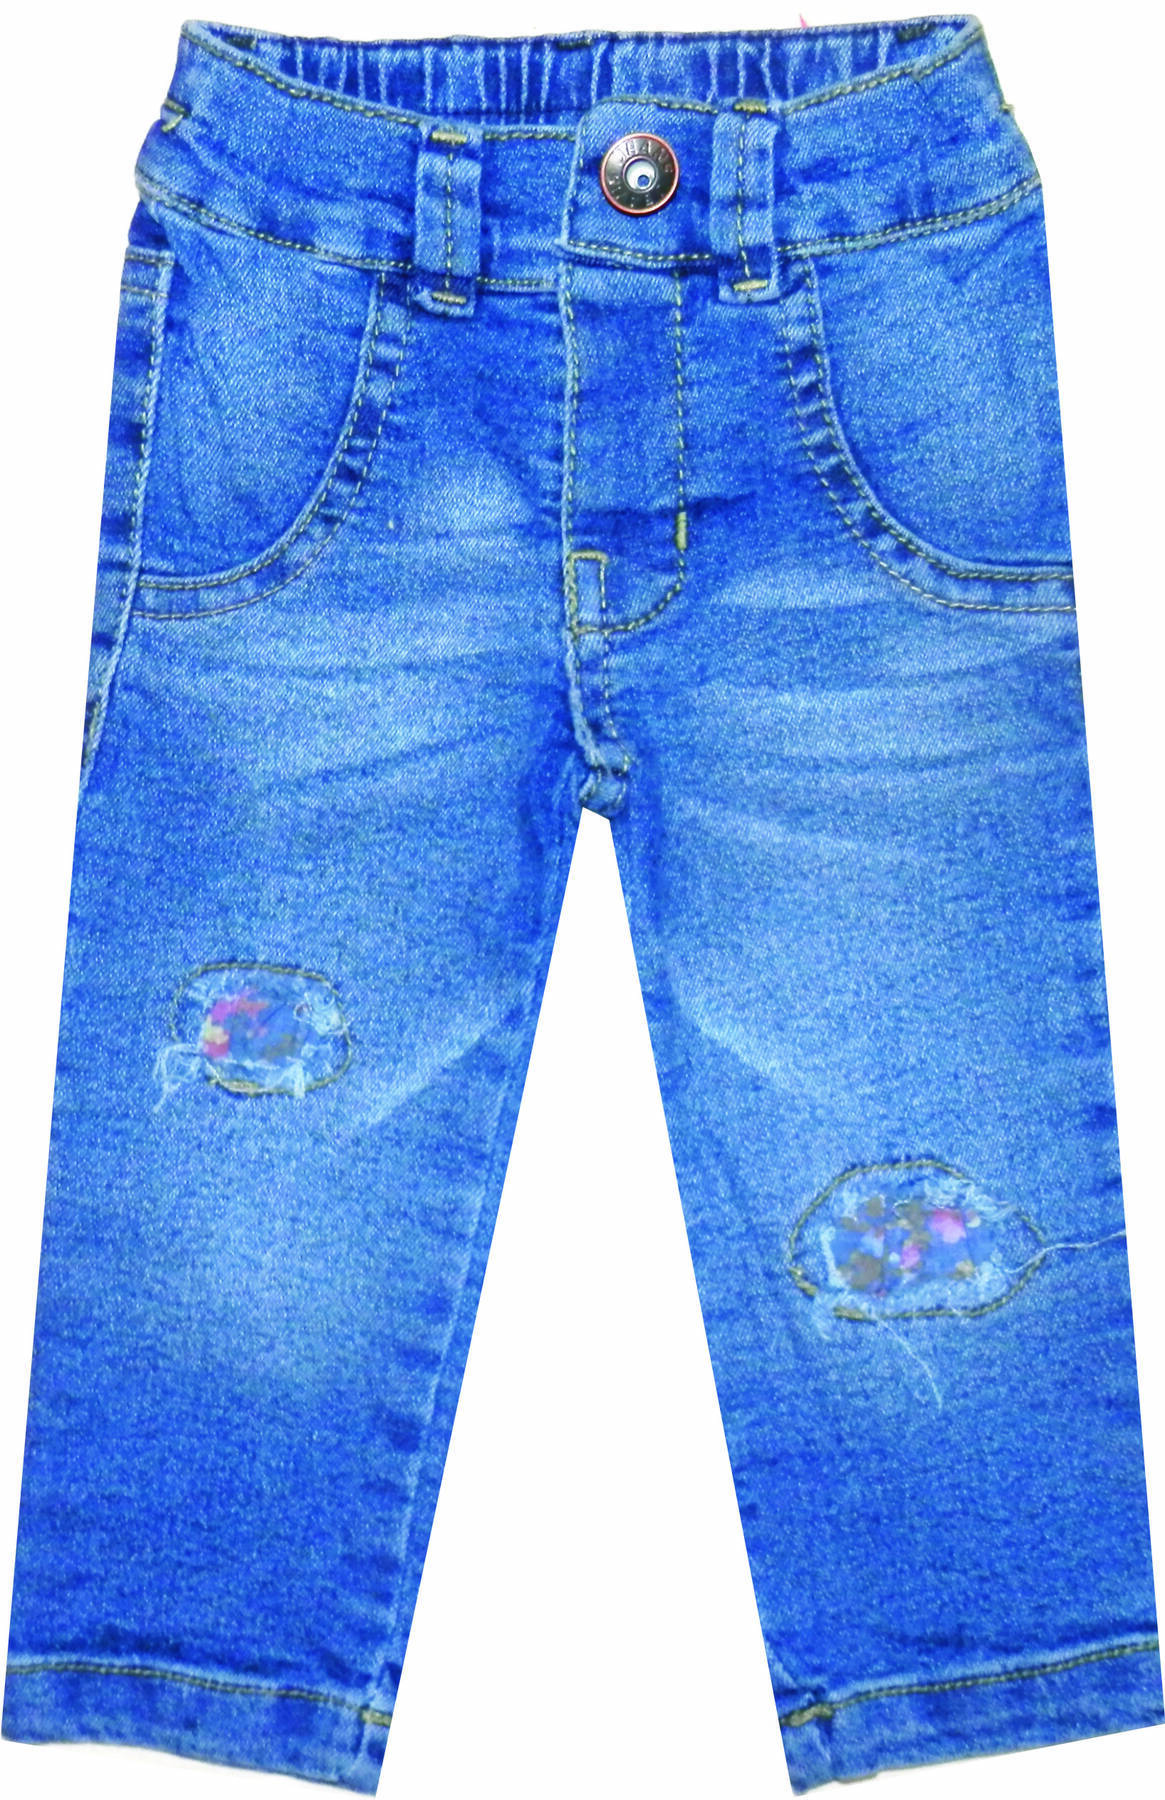 Imagen producto Pantalón beba jean con parches 5